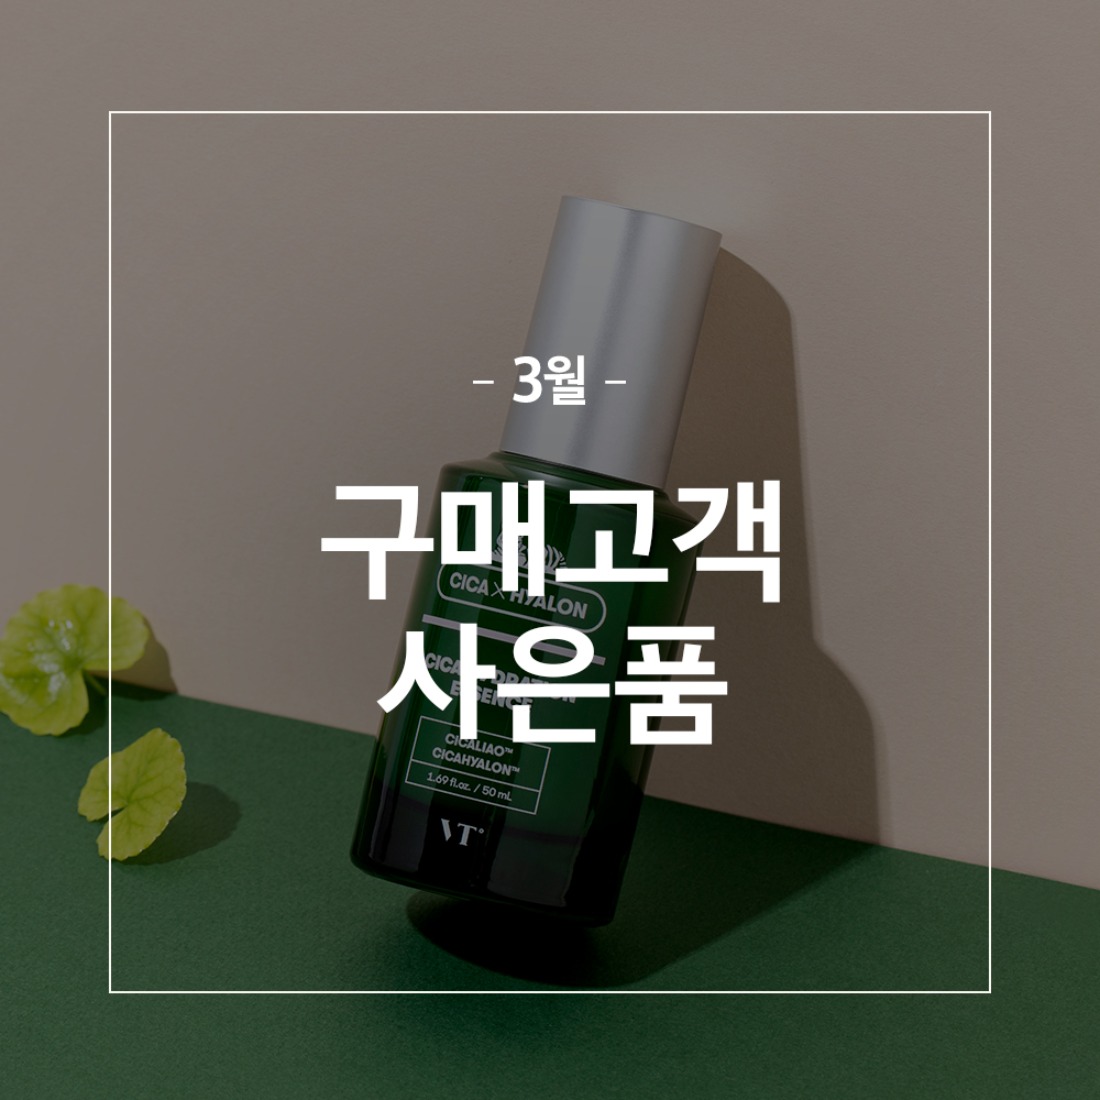 브이티코스메틱,화장품,브이티코스메틱,23년 3월 구매금액별 사은품,자체브랜드